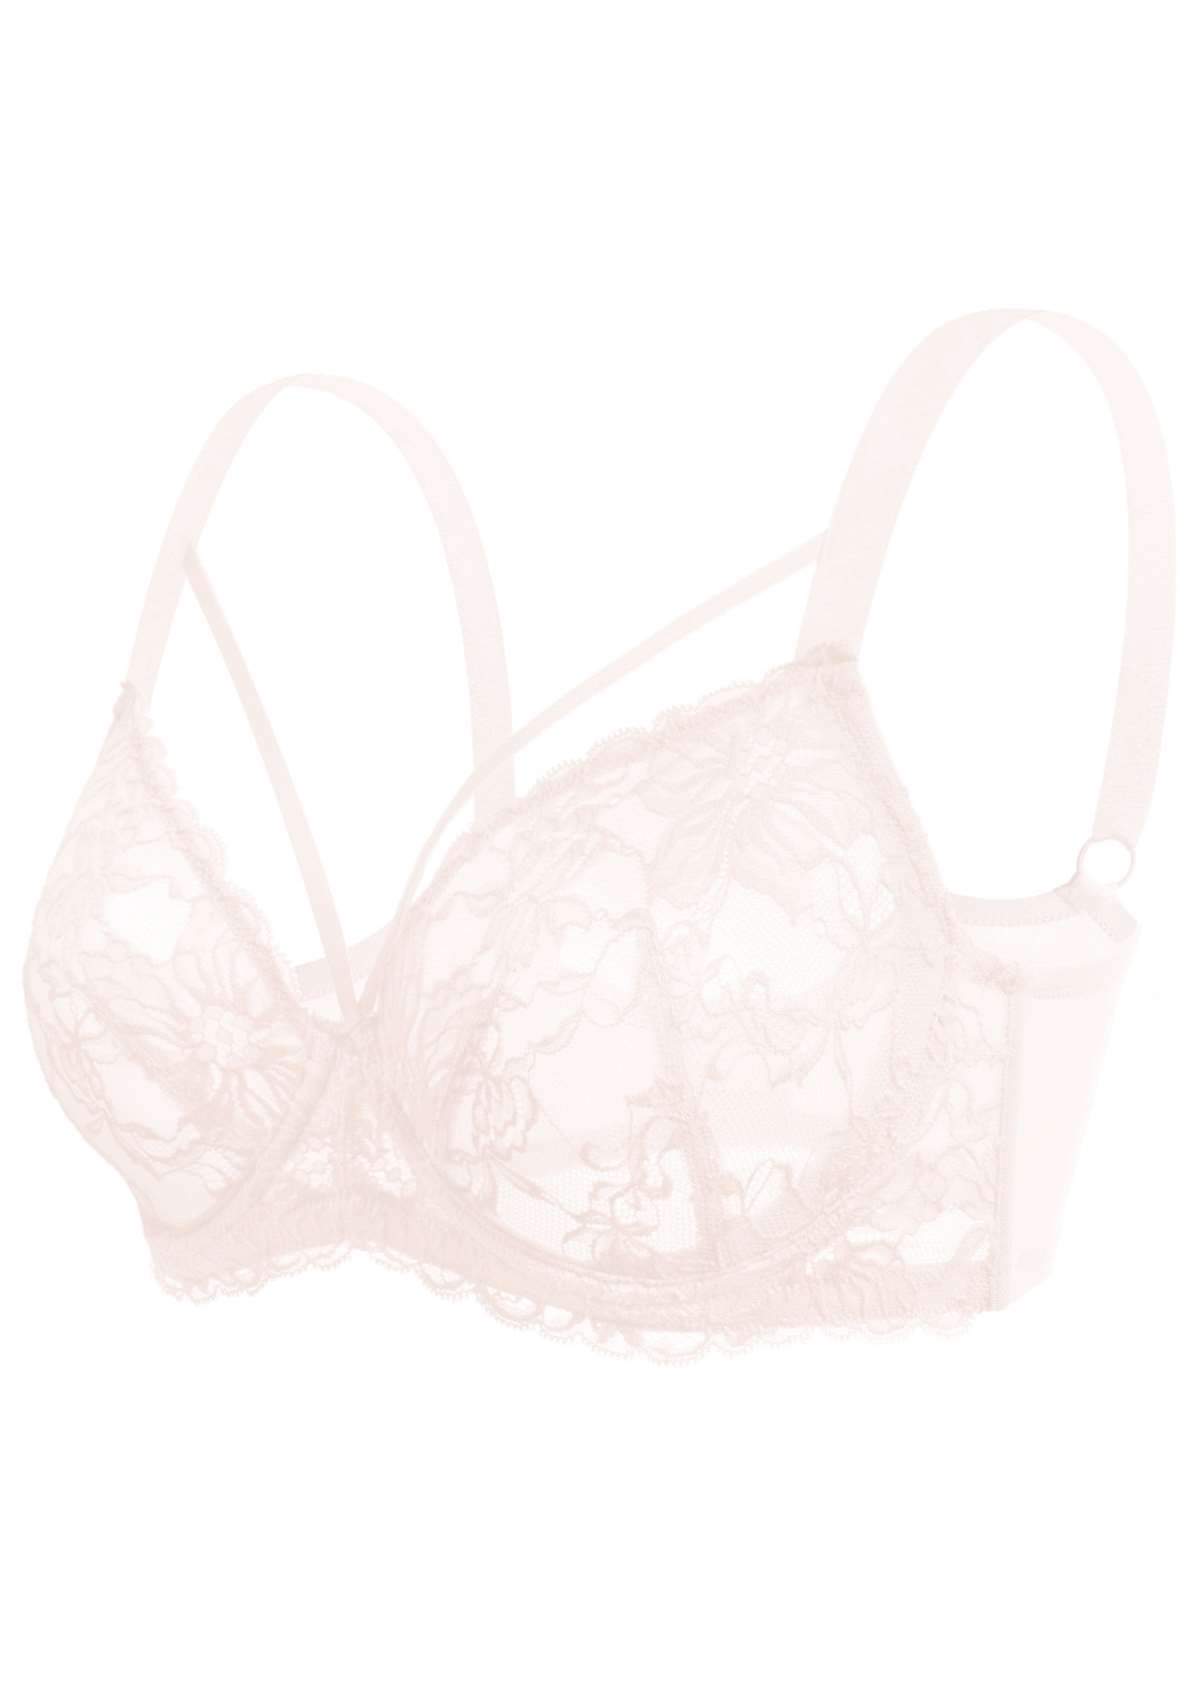 HSIA Pretty In Petals Underwire Lace Bra: No Padding, Full Cup Bra - Pink / 40 / DDD/F